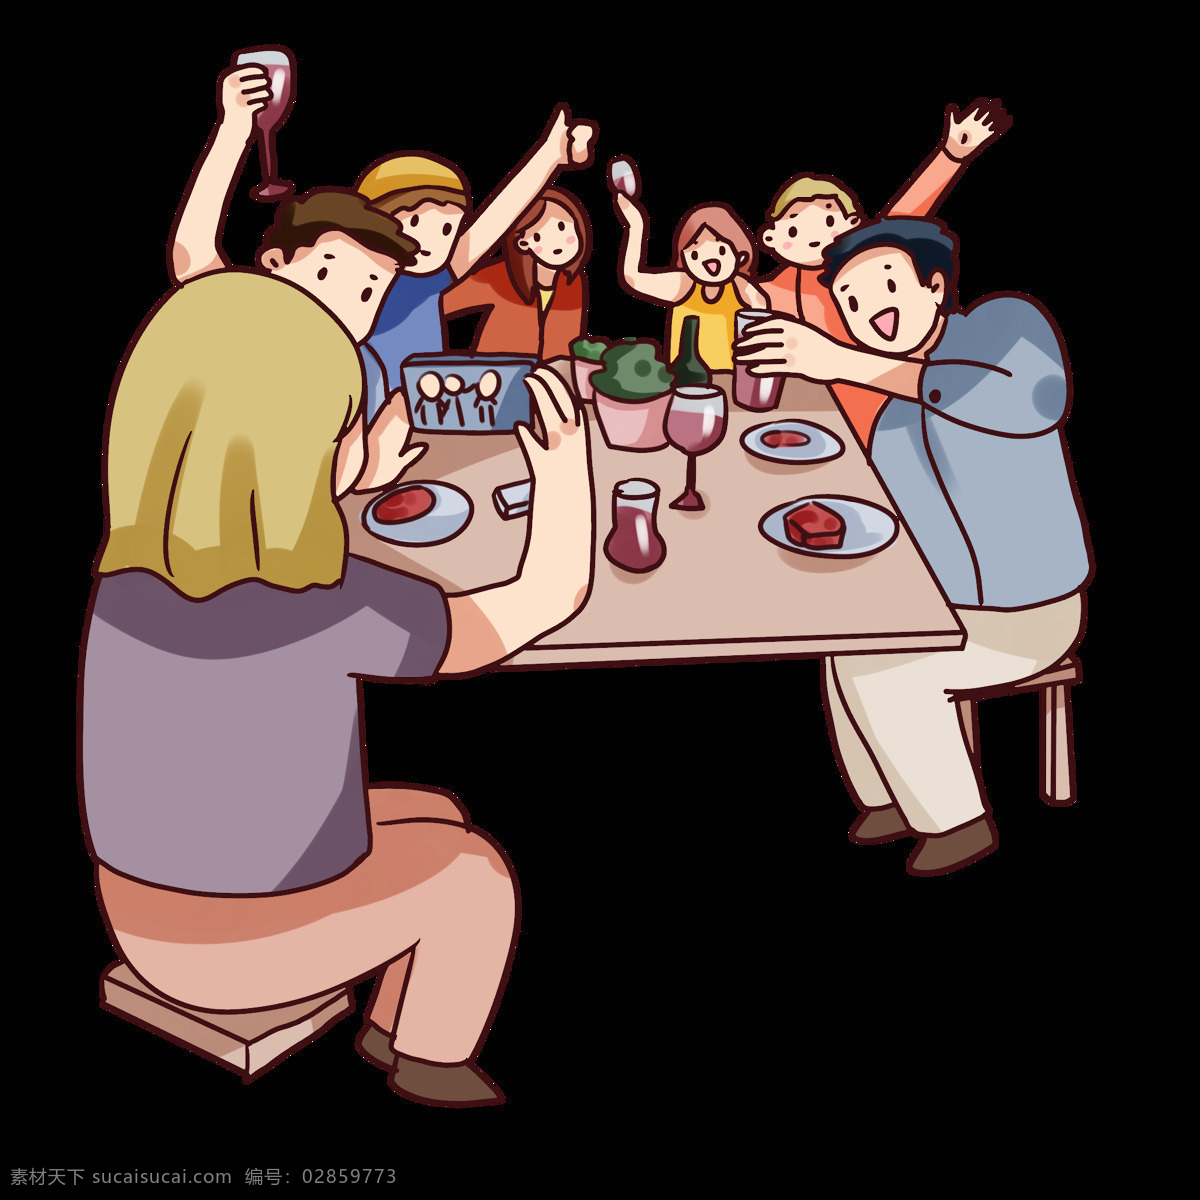 聚餐 家人团圆 一起吃饭 聚会 疫情不聚会 卡通人物